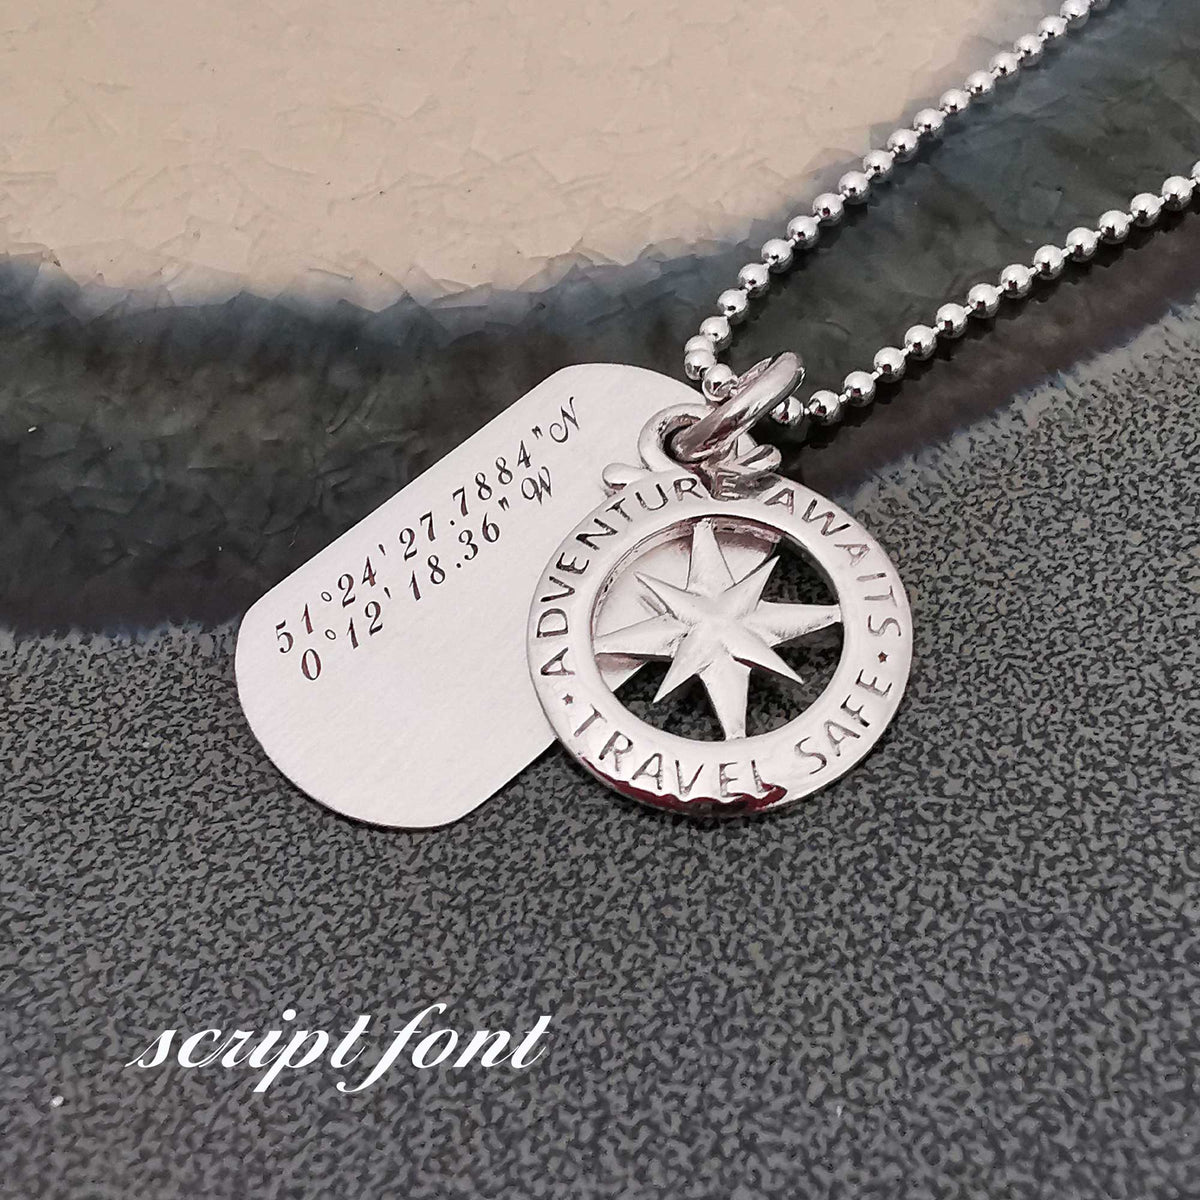 script font engraved dog tag travel safe necklace travel gift present